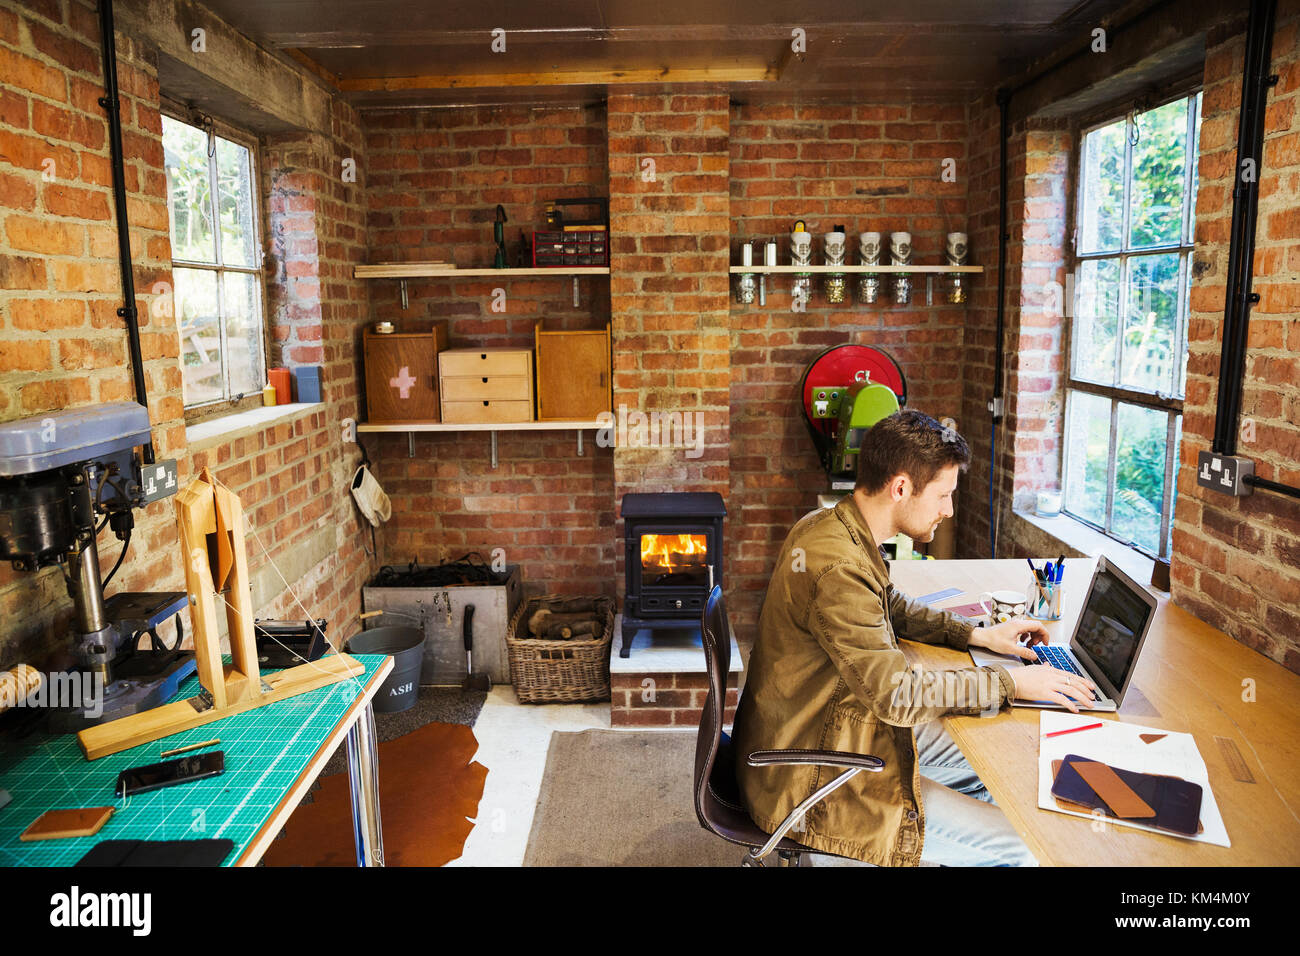 Un designer seduto nel suo marocchineria officina, a una scrivania utilizzando un laptop. woodburning stufa con un incandescente Fire lit. Foto Stock